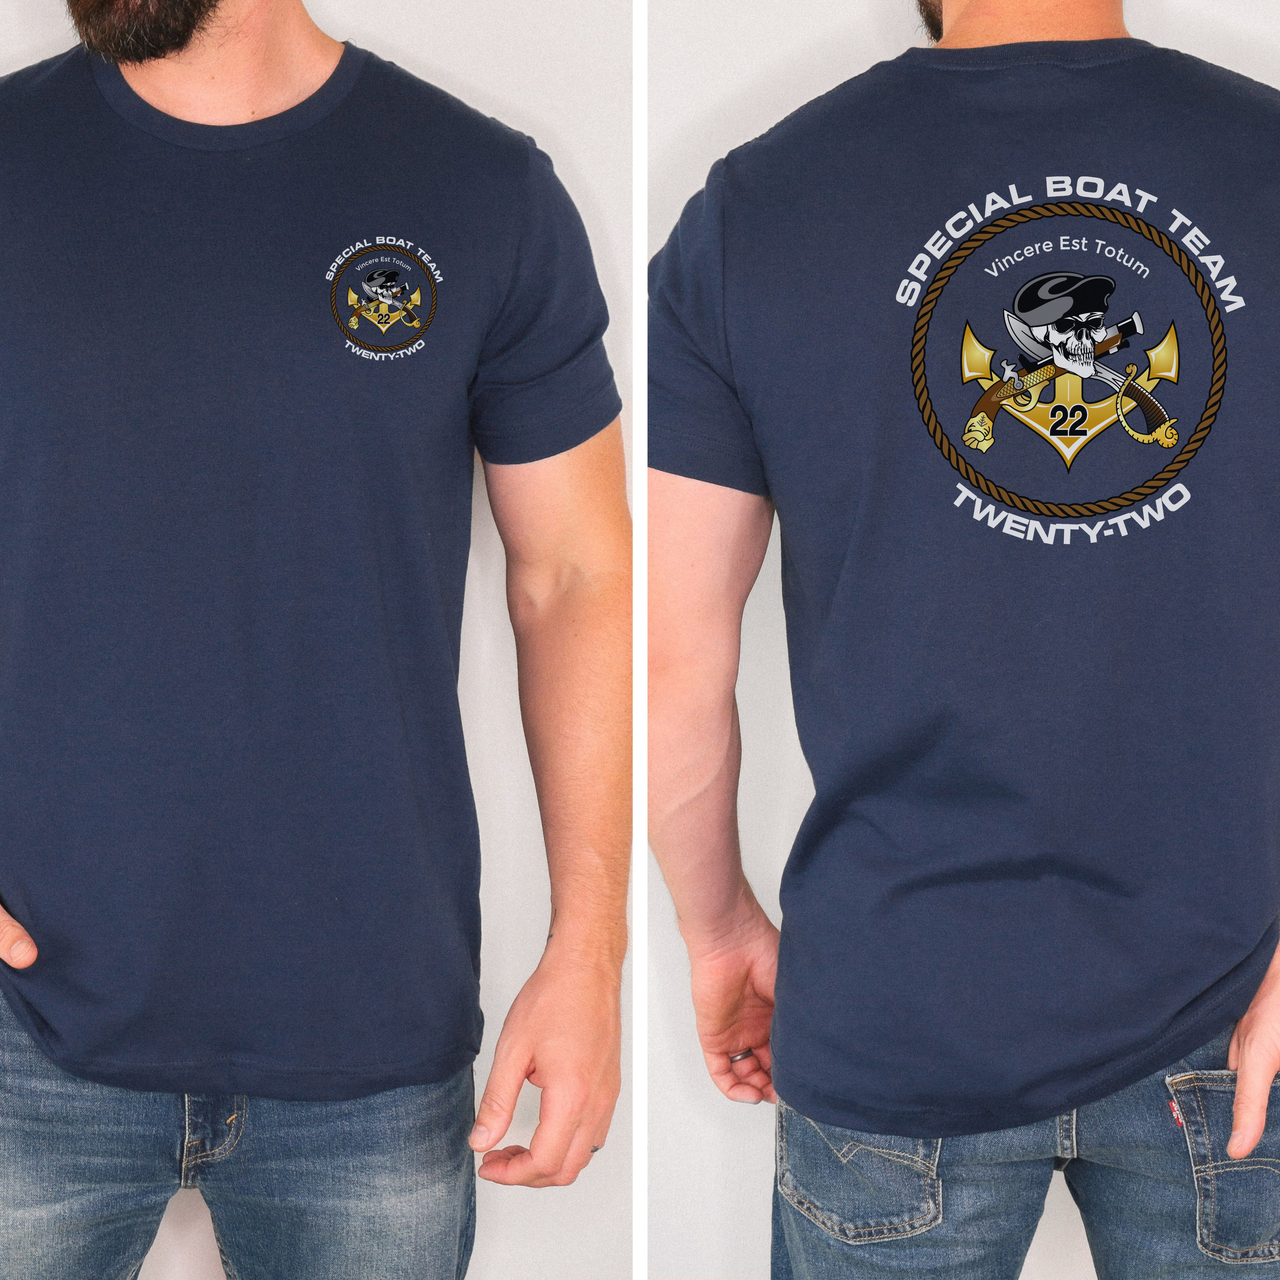 Special Boat Team 22 v1 - SBT22 T-Shirt (Color)